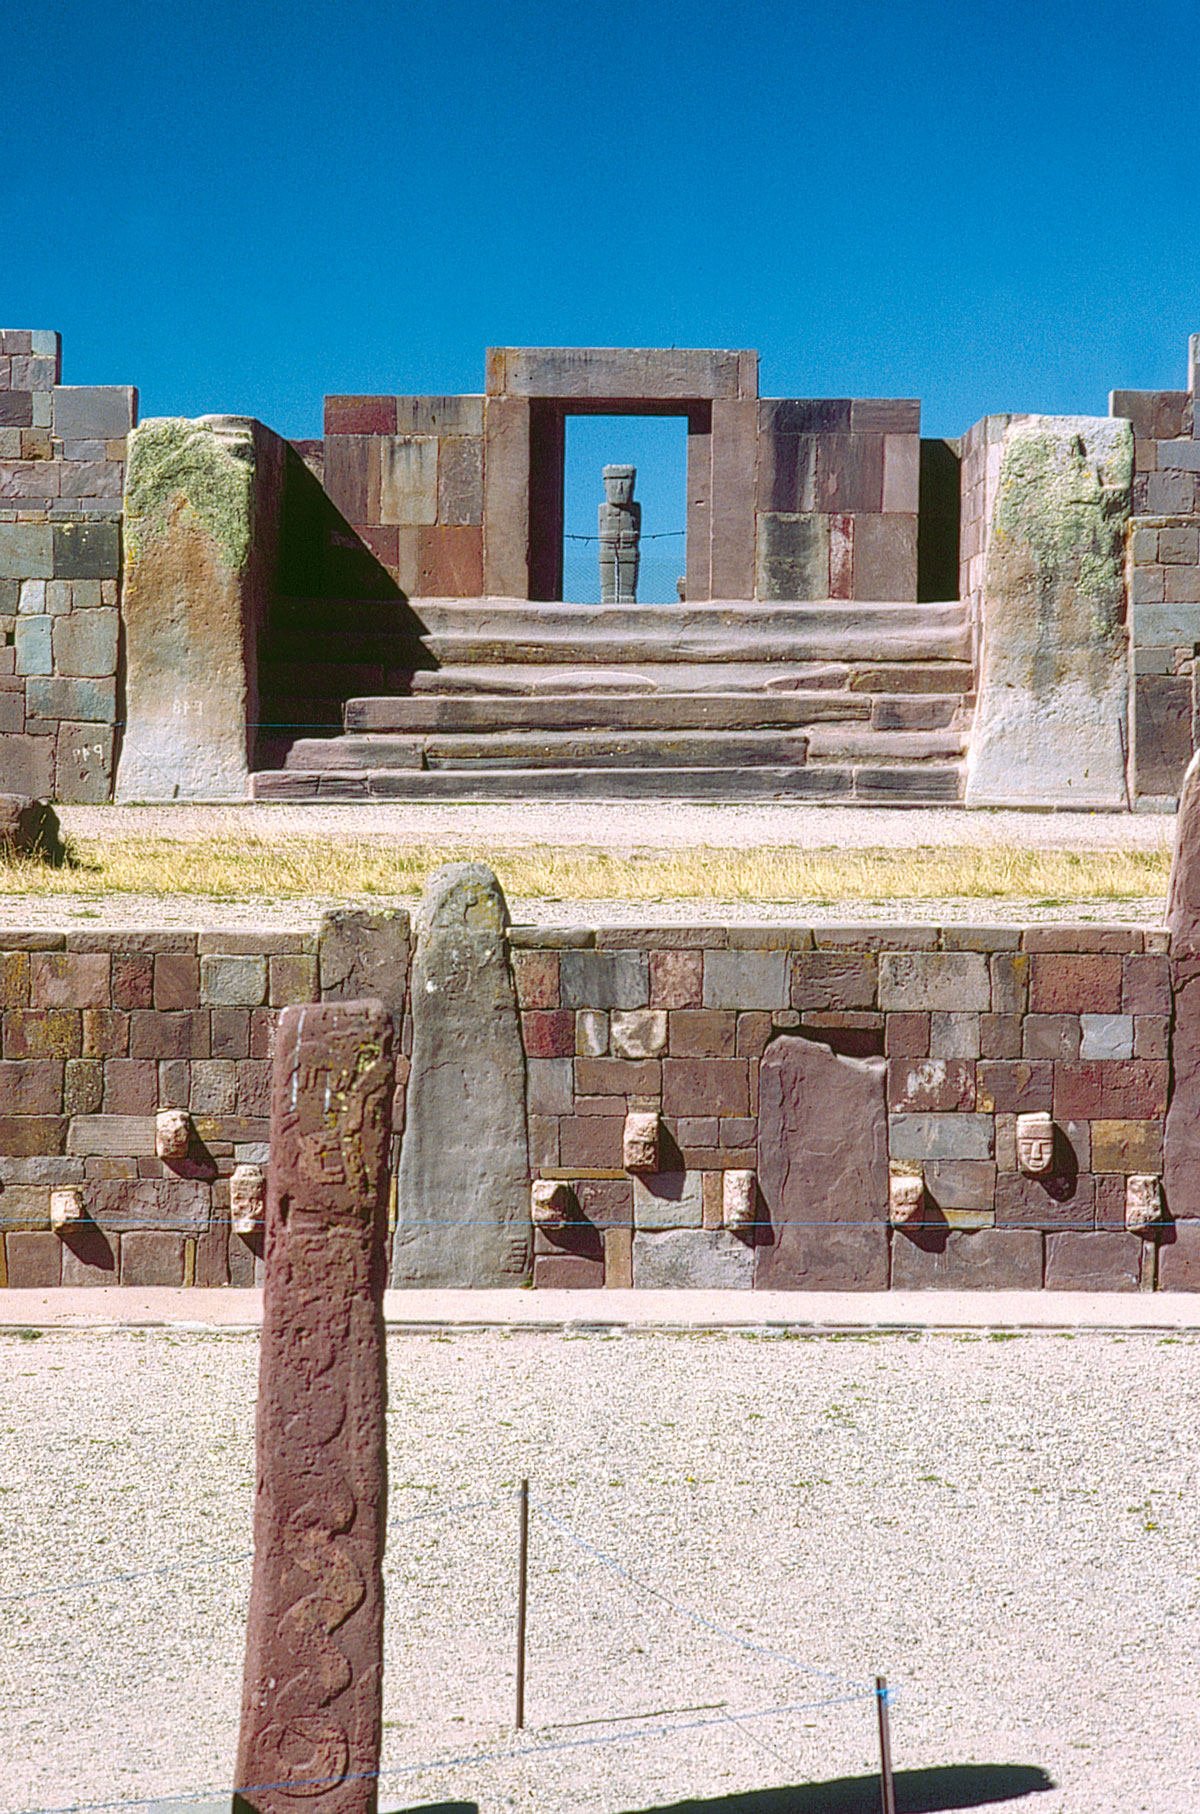 Le grand ensemble de Tiwanacu : en bas le Templete (vue partielle d'un mur de parement orné de têtes à tenon), à l'arrière-plan, escalier et portique d'accès au Kalasasaya, encadrant le monolithe “Ponce” (en grès).